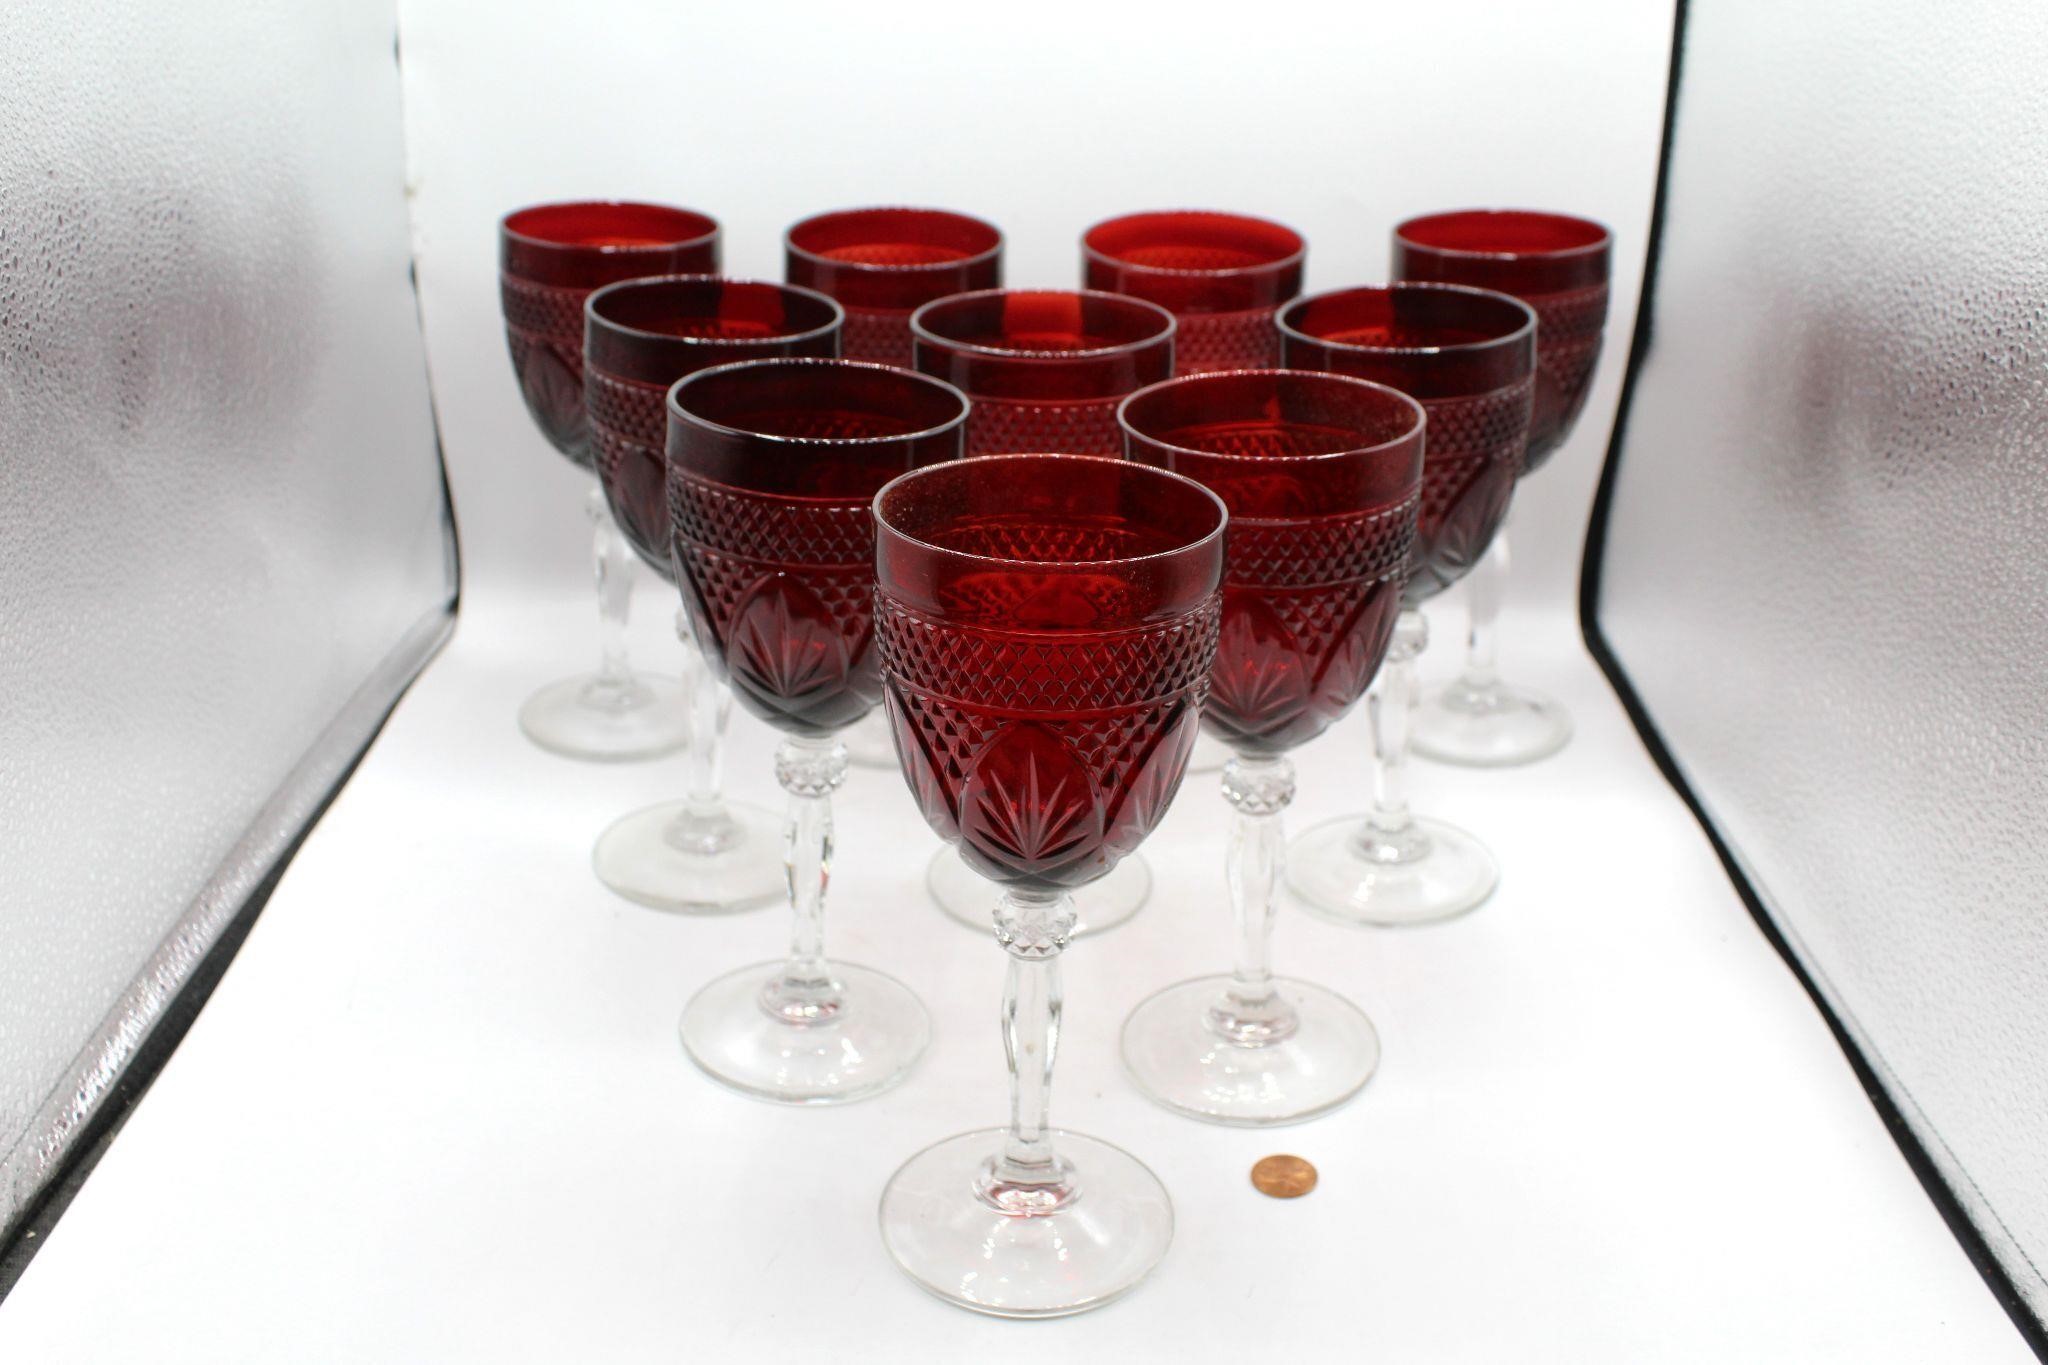 Set 10 Cristal D'arques Ruby Wine Stems